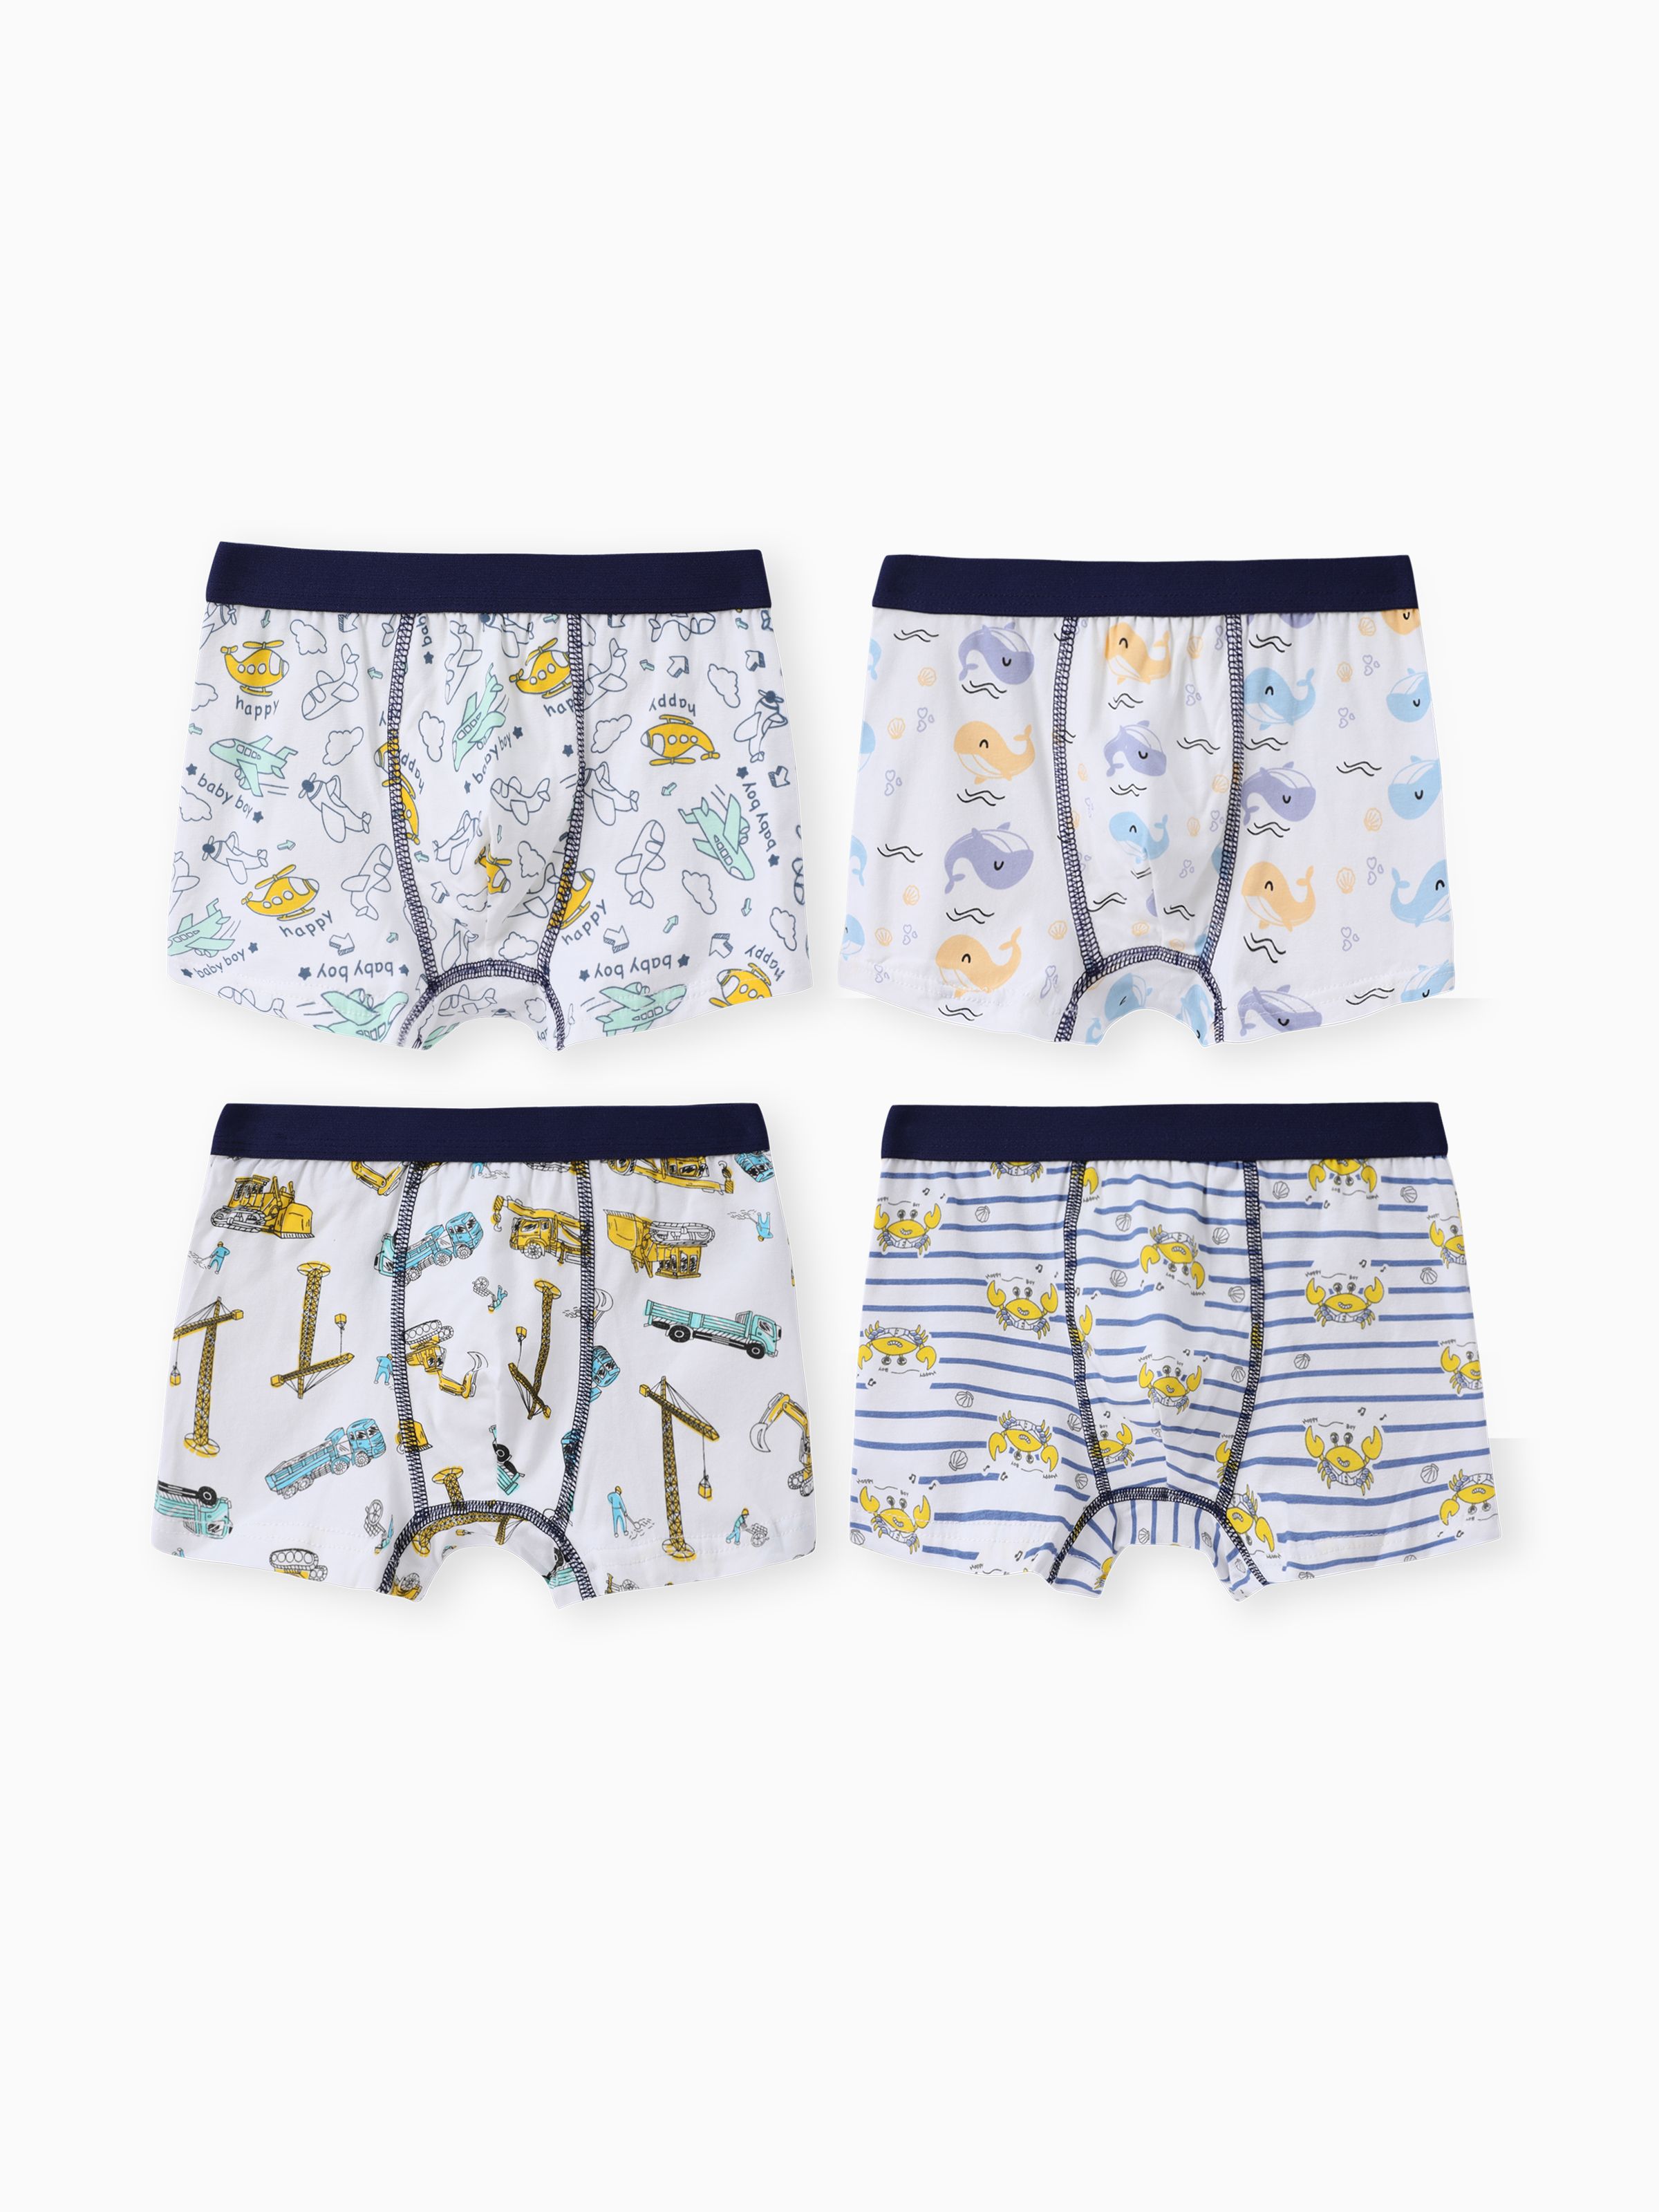 

4 Pieces Boys' Cotton Underwear Set with Marine Element, Childlike Style